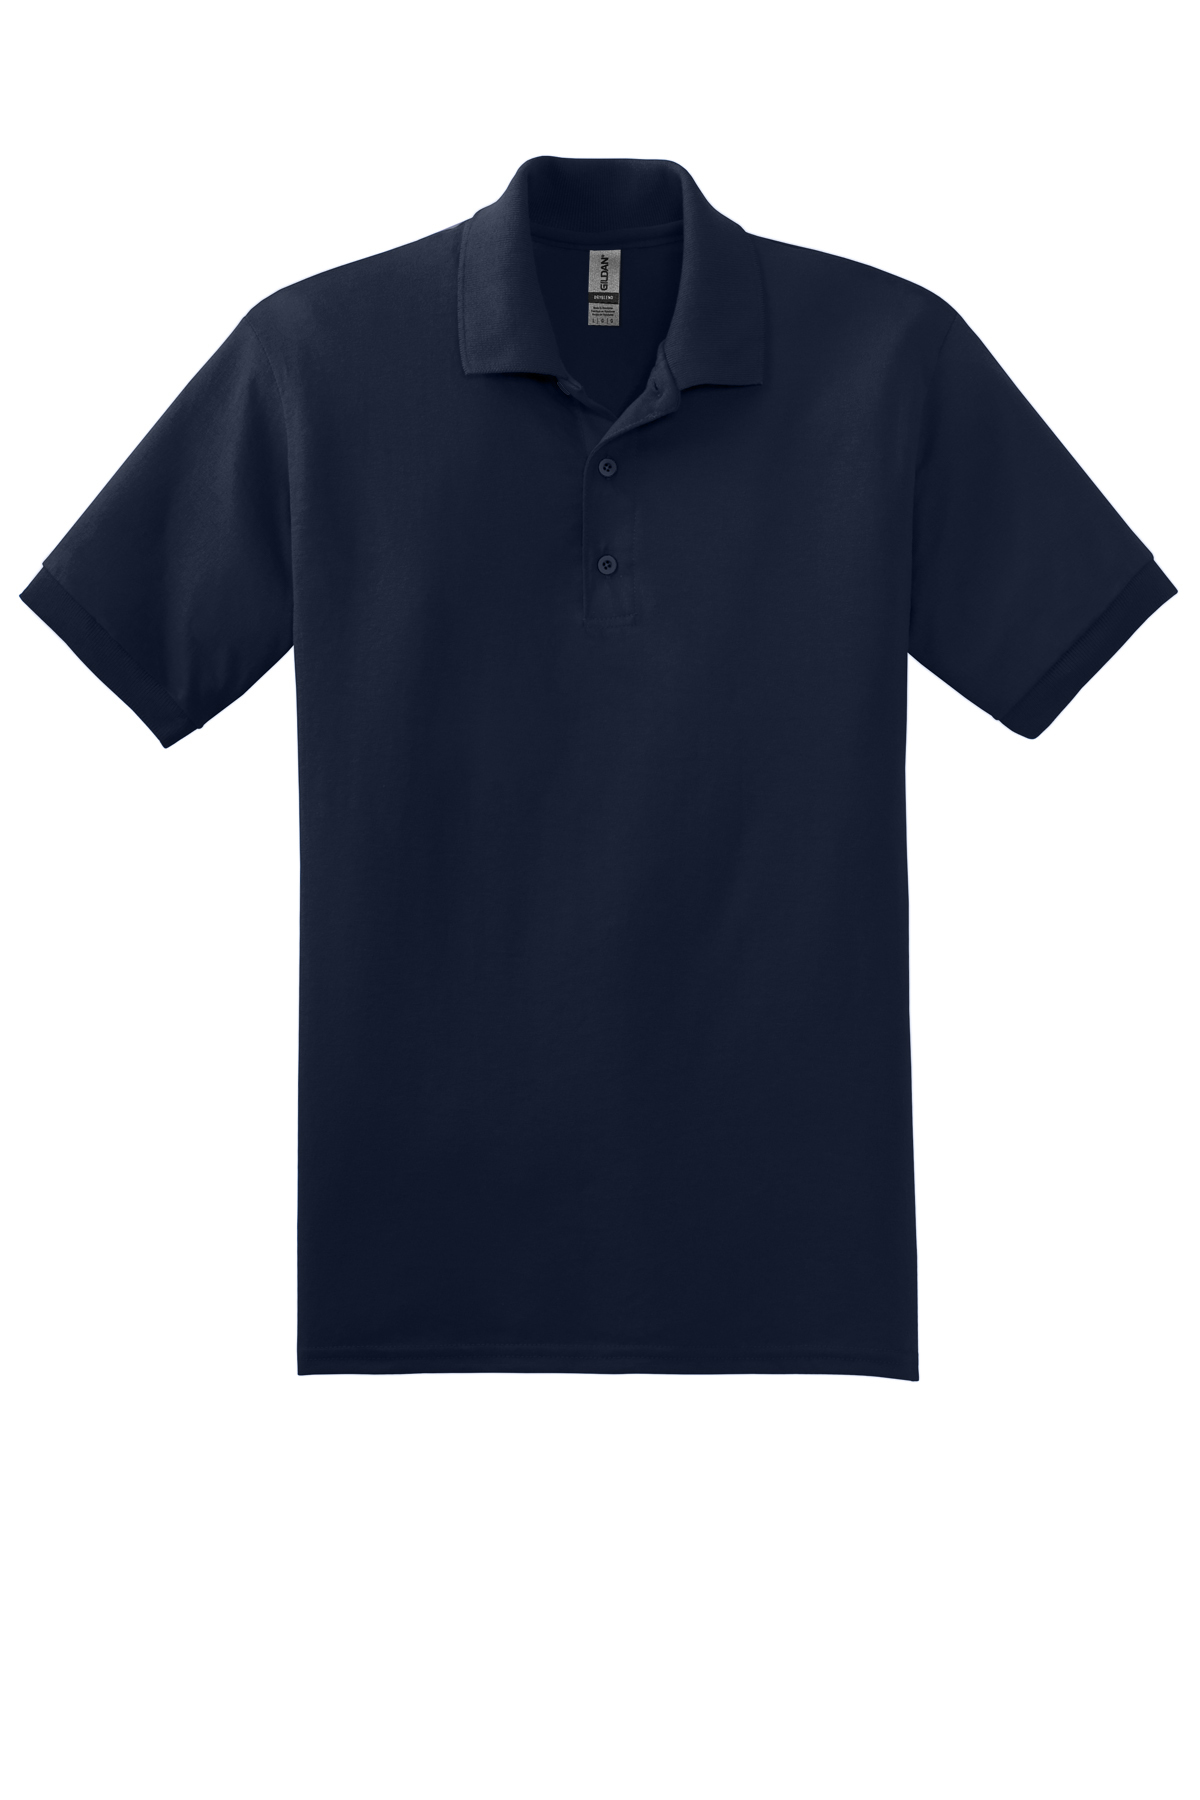 Gildan - DryBlend 6-Ounce Jersey Knit Sport Shirt | Product | SanMar